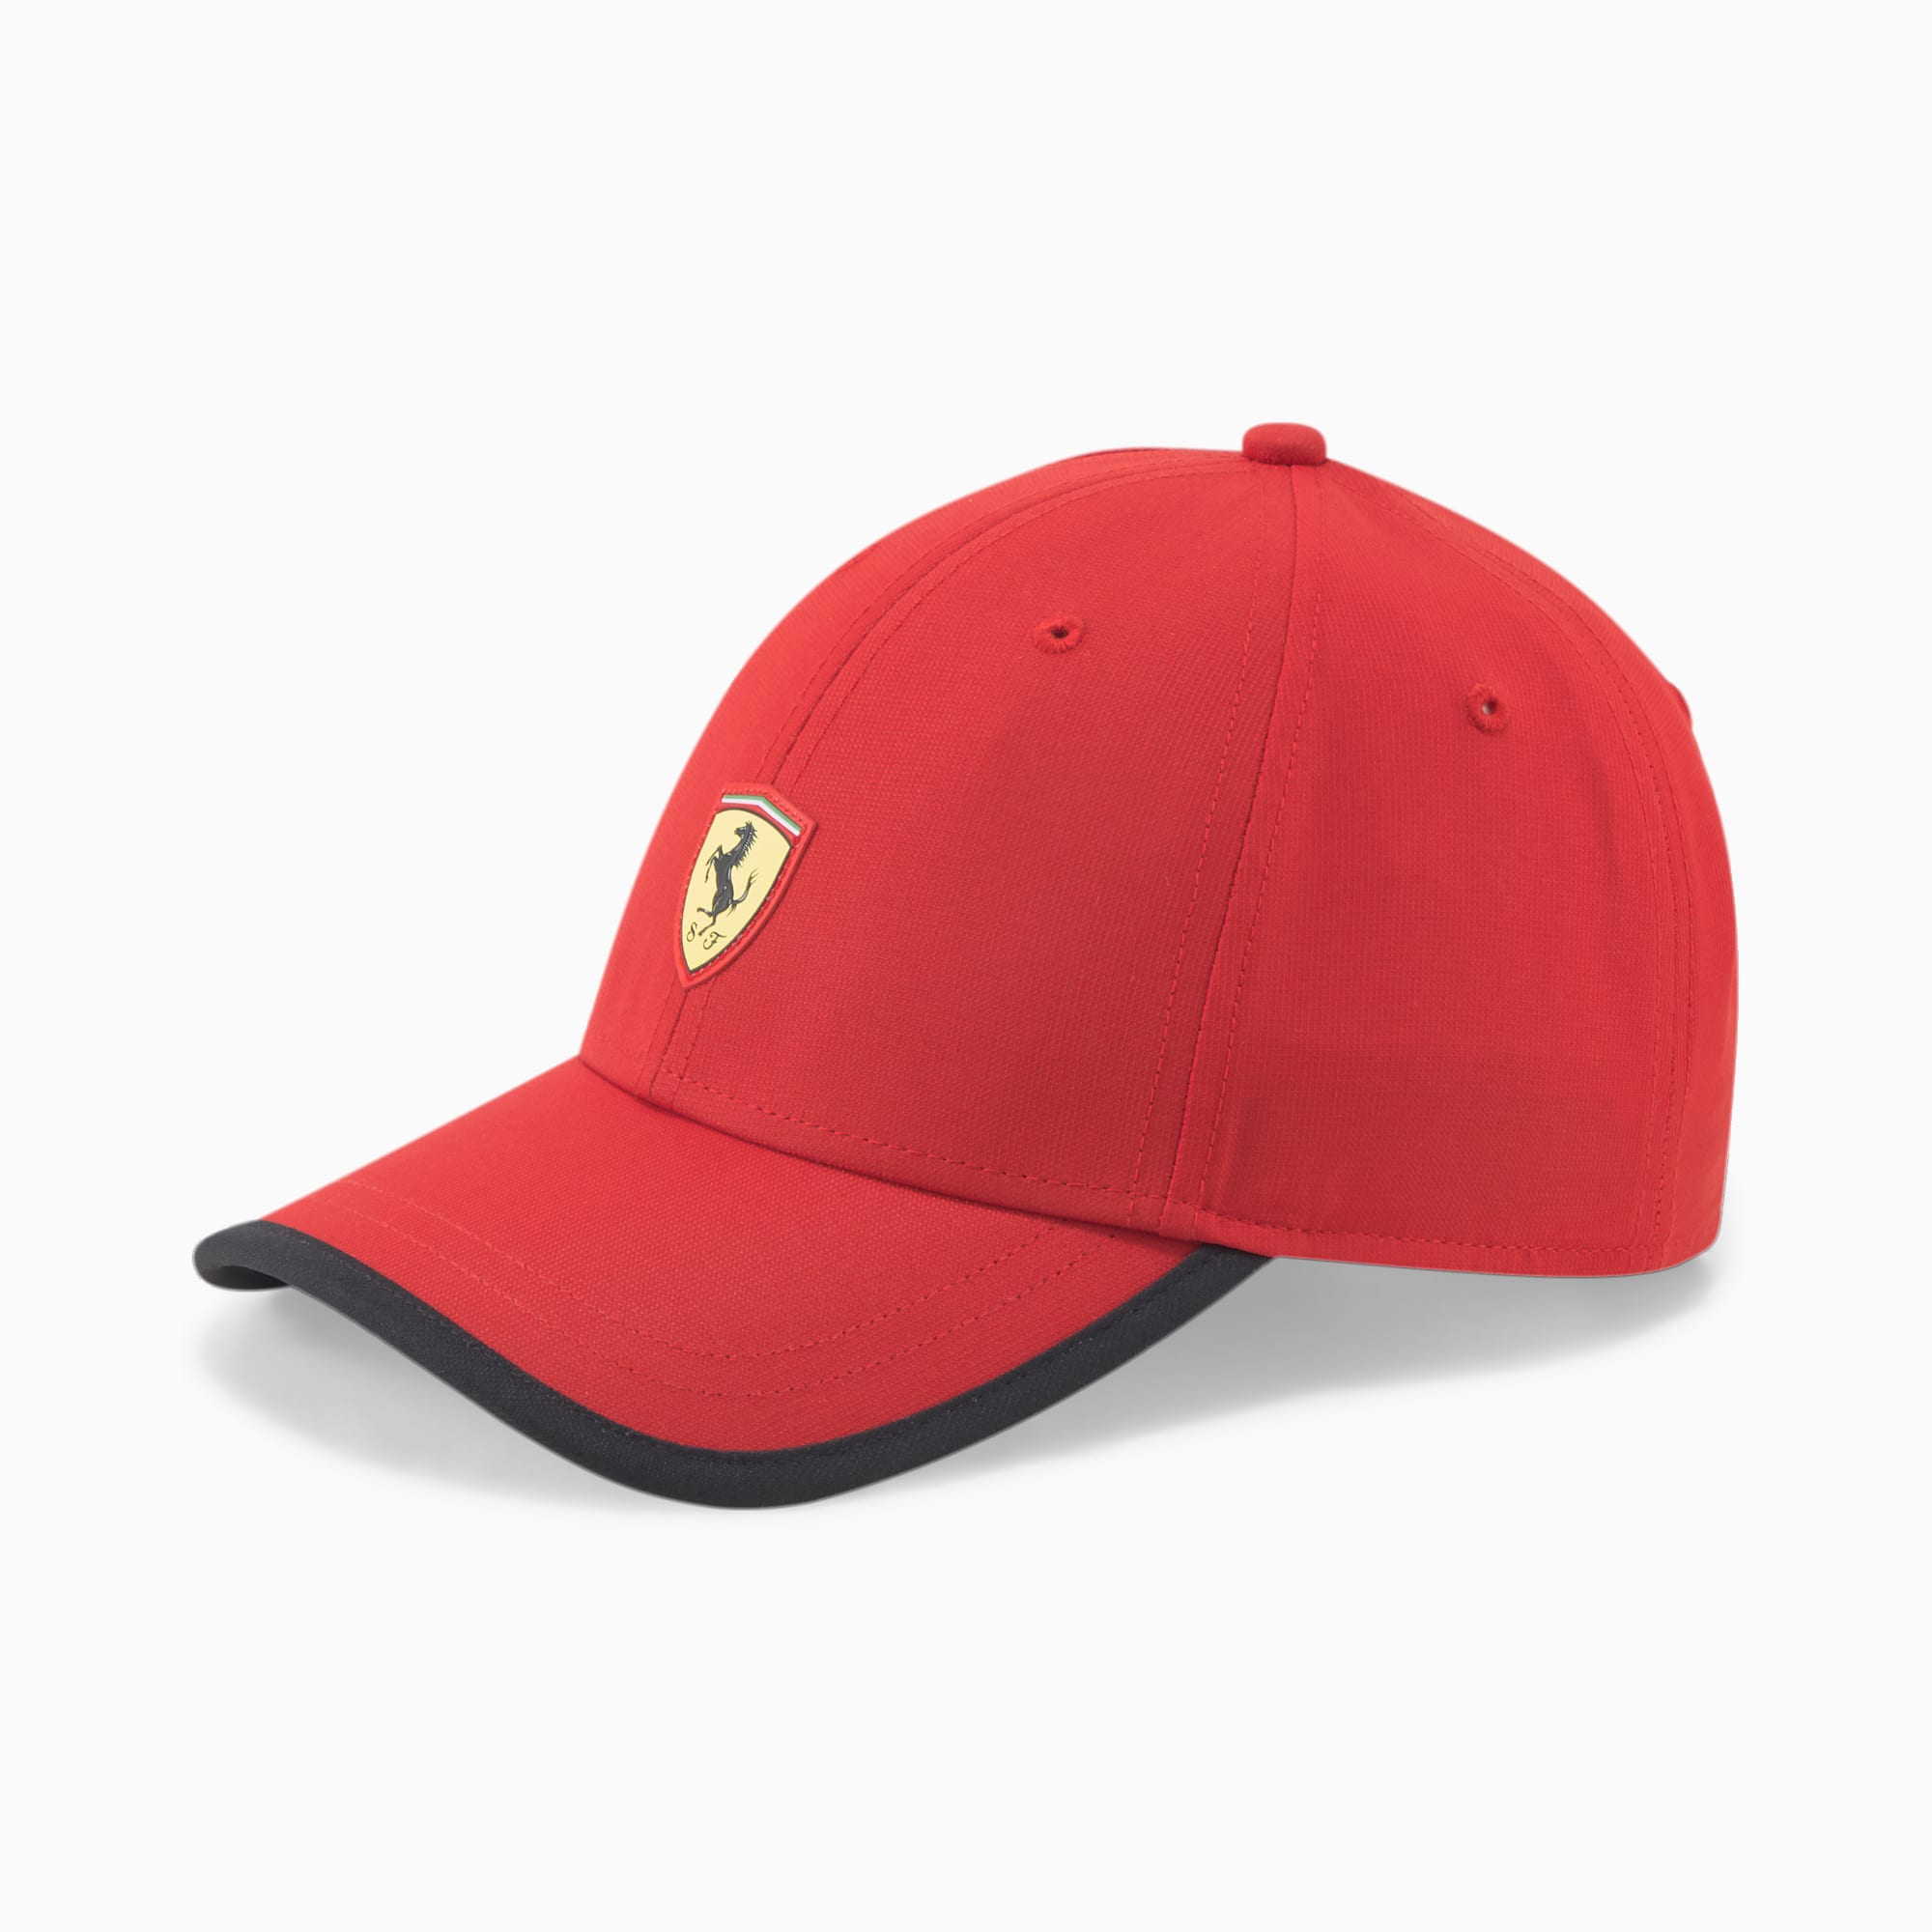 SPTWR | Hat Race Scuderia PUMA Ferrari